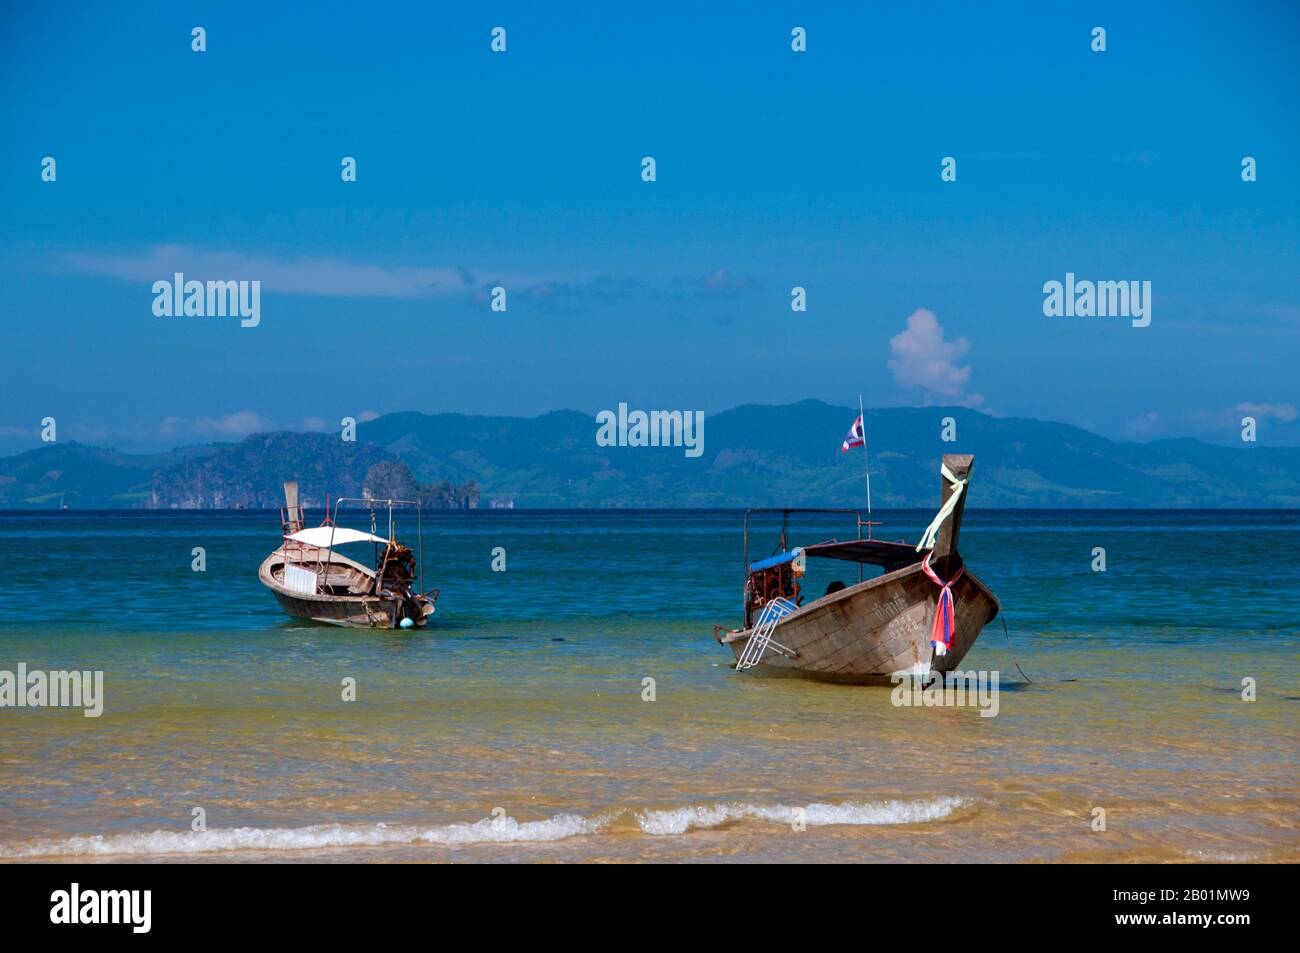 Thailand: Ausflugsboote, hat Khlong Muang, Krabi Küste. Hat Khlong Muang liegt westlich von hat Noppharat Thara und ist von Ao Nang durch eine lange, felsige Landzunge geschützt. Der Strand blickt nach Westen über die Andamanensee in Richtung Ko Phi Phi. Die Provinz Krabi besteht aus mehr als 5.000 Quadratkilometern mit Dschungel bedeckten Hügeln und scharfen, zerklüfteten Karstvorsprüngen sowie mehr als 100 km üppiger, unberührter Küste und rund 200 Inseln in der benachbarten Andamanensee. Etwa 40 Prozent der Provinzbevölkerung sind muslimisch, der Rest überwiegend buddhistisch. Stockfoto